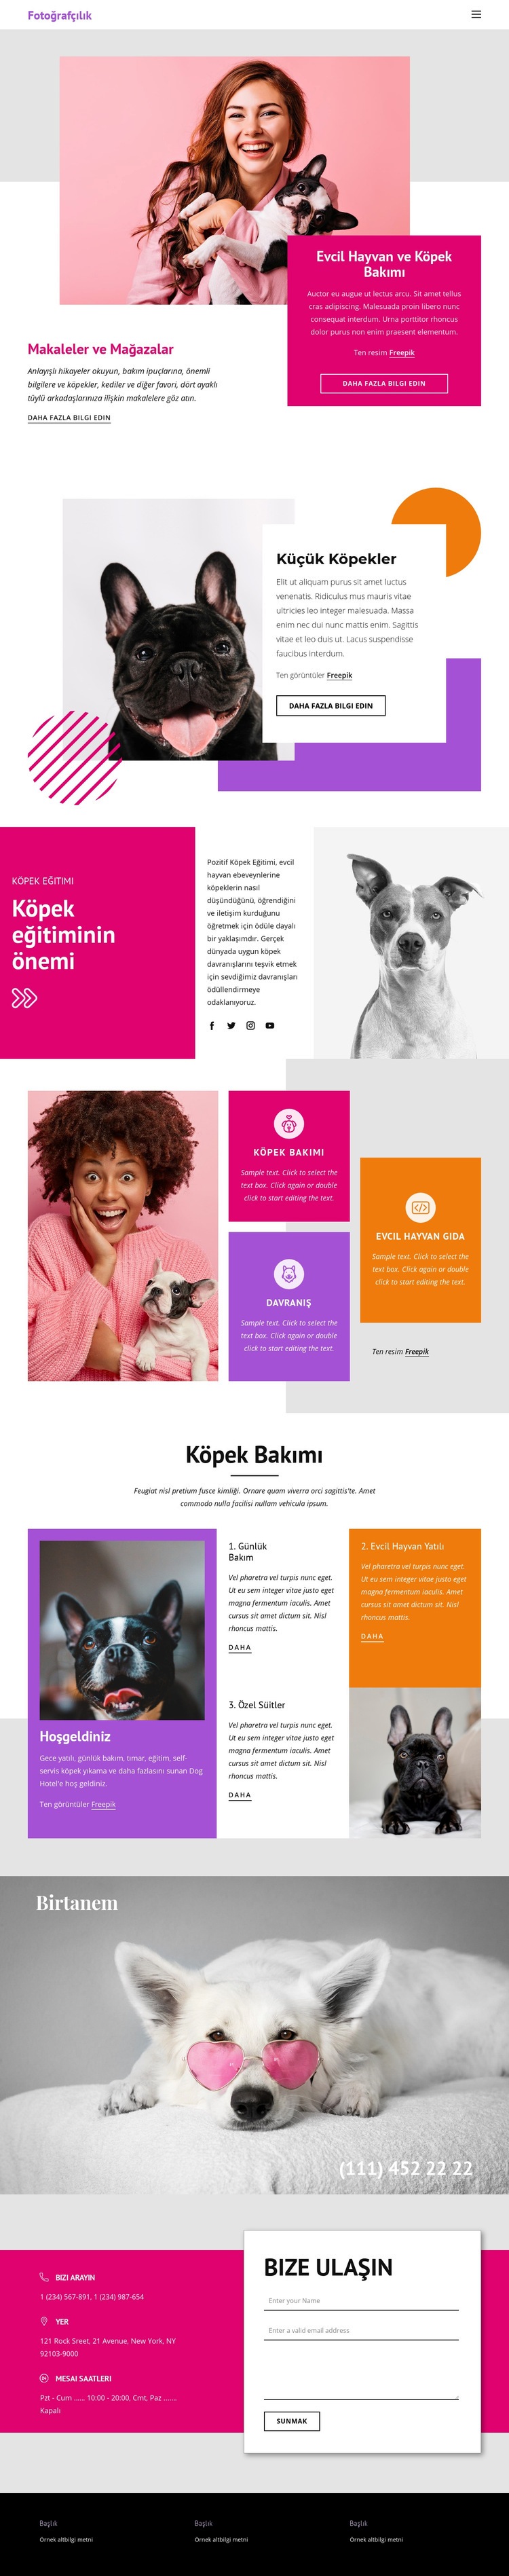 Evcil Hikayeler Web sitesi tasarımı